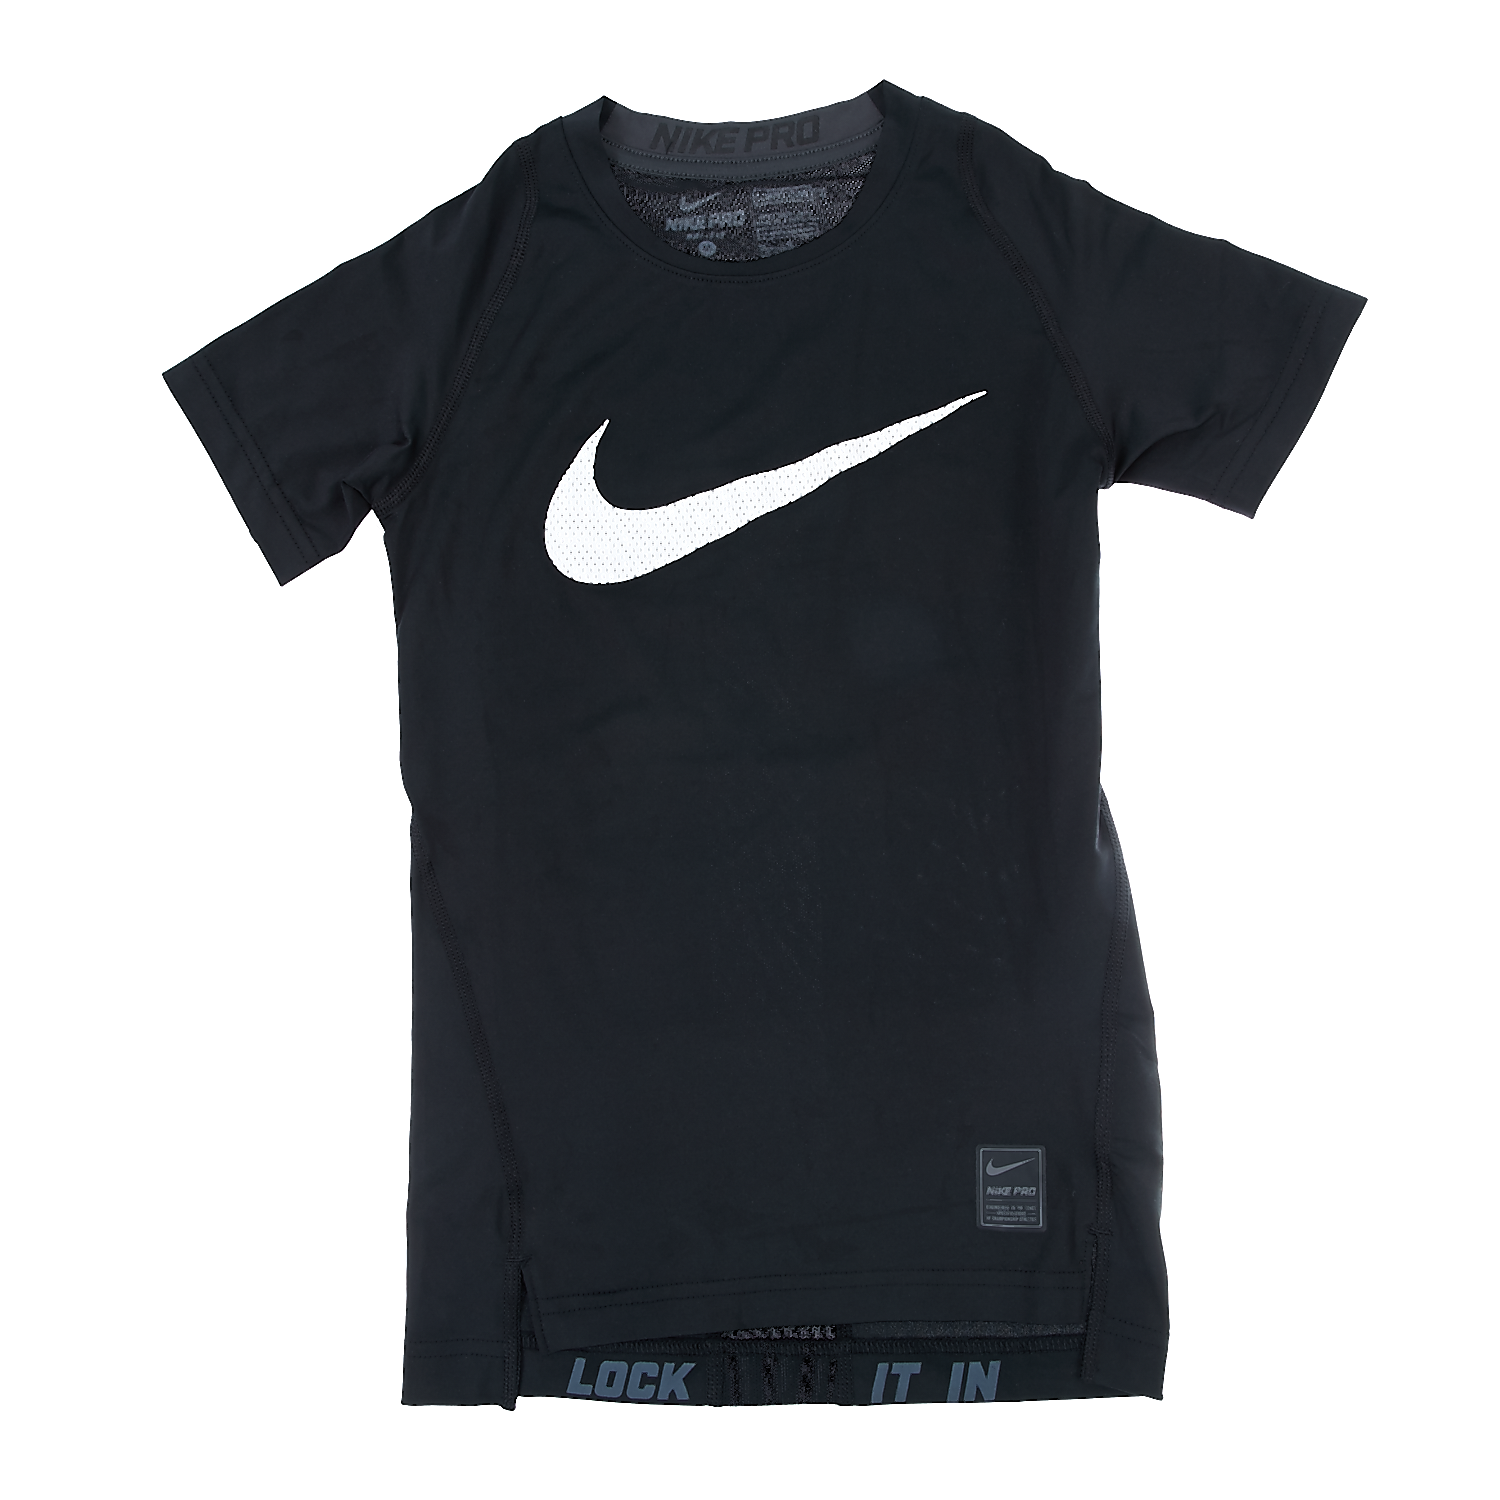 Παιδικά/Boys/Ρούχα/Αθλητικά NIKE - Παιδική μπλούζα Nike μαύρη